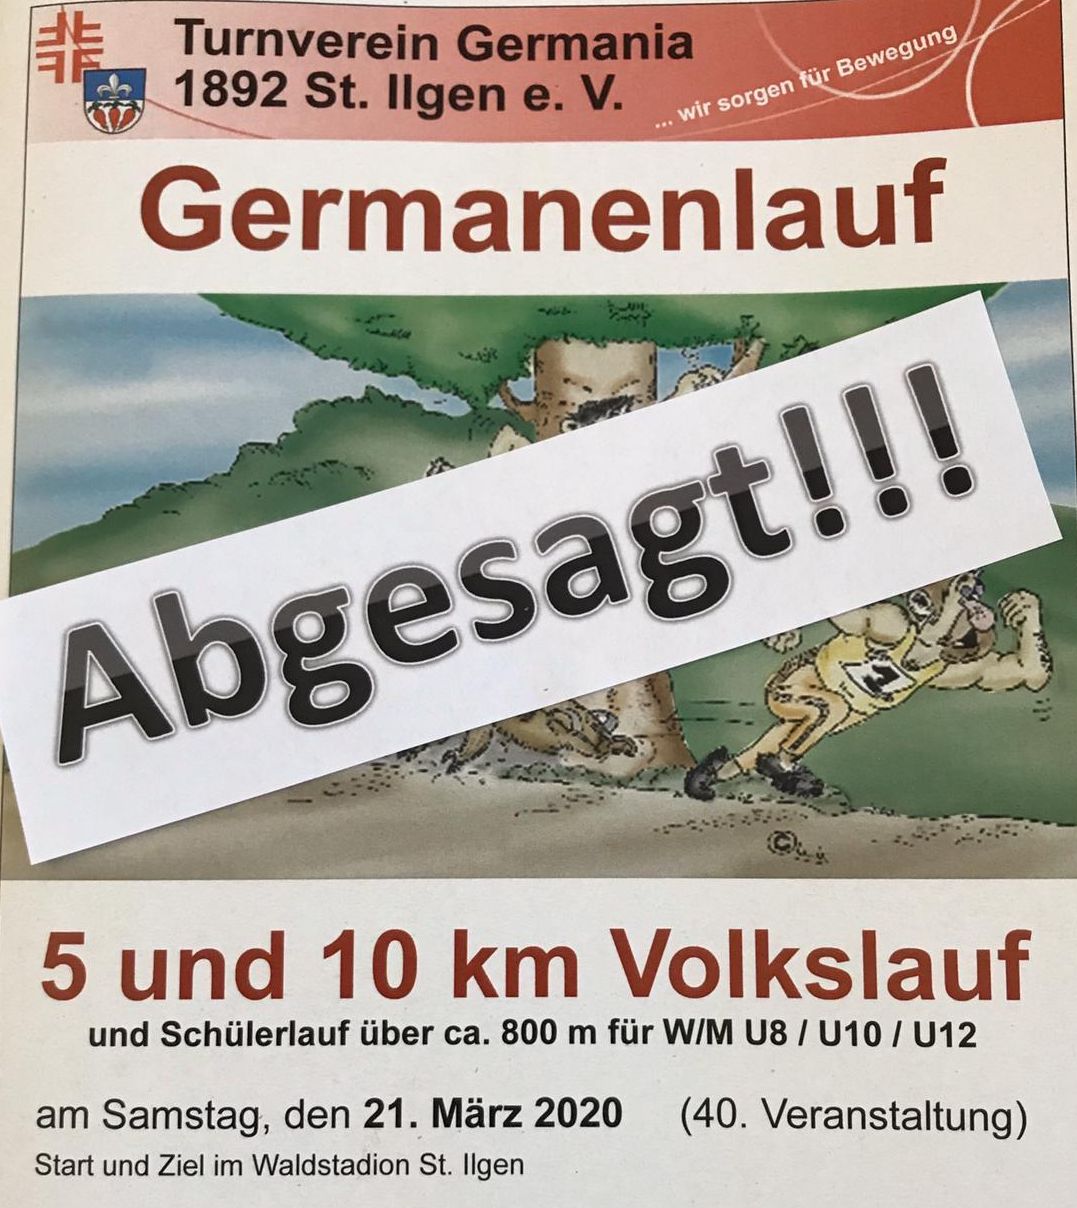 Absage: Germanenlauf / Volkslauf über 5 und 10 km am  21. März